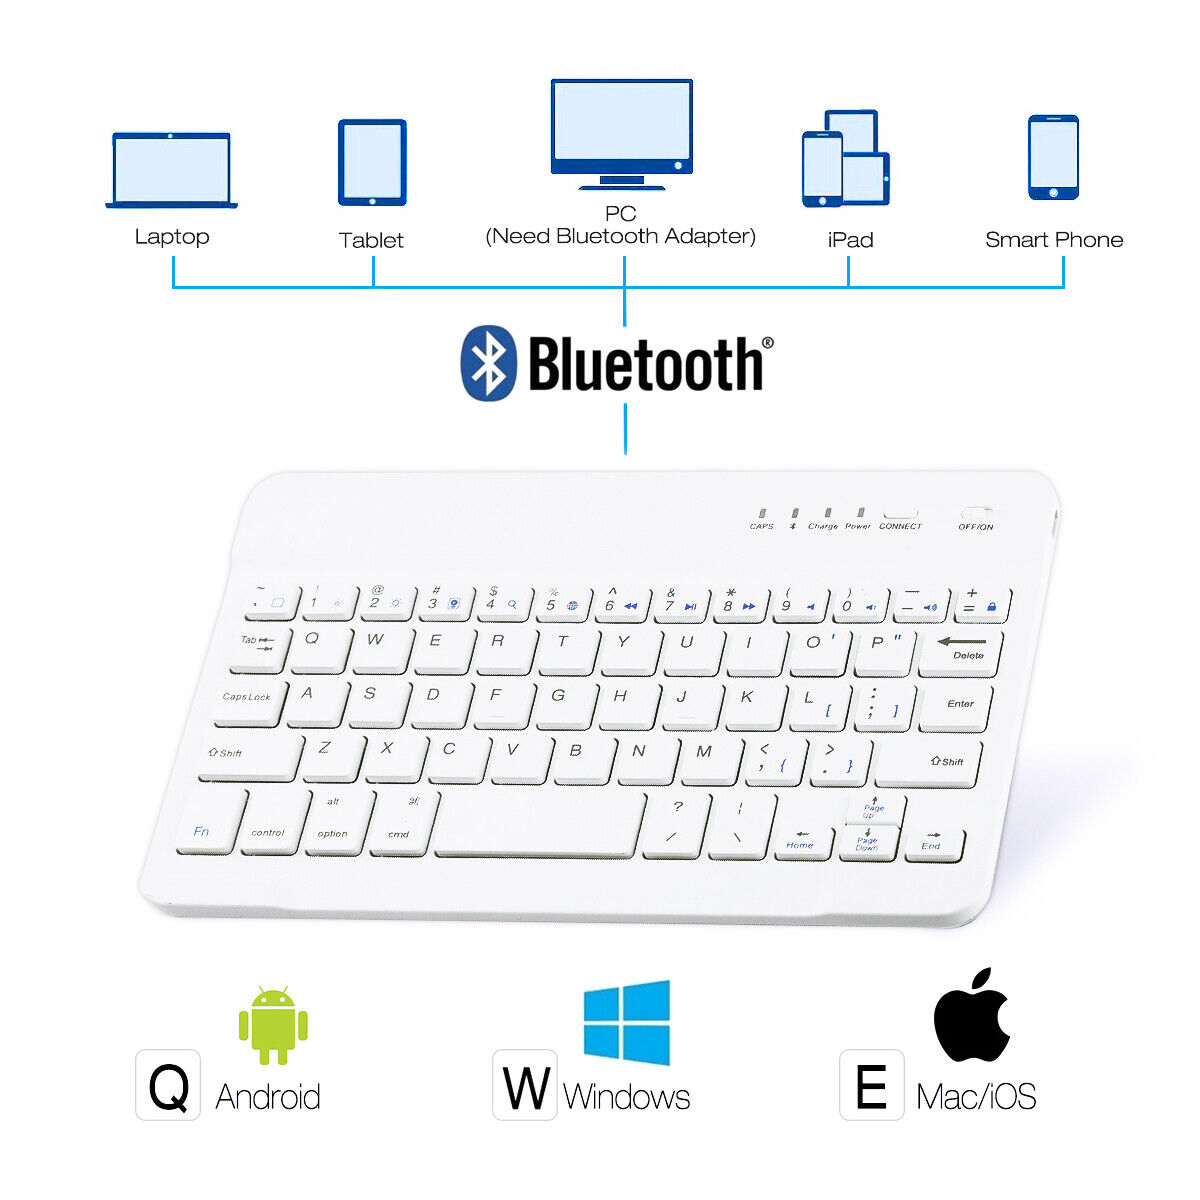 US Keyboard Bluetooth For iPad 9.7